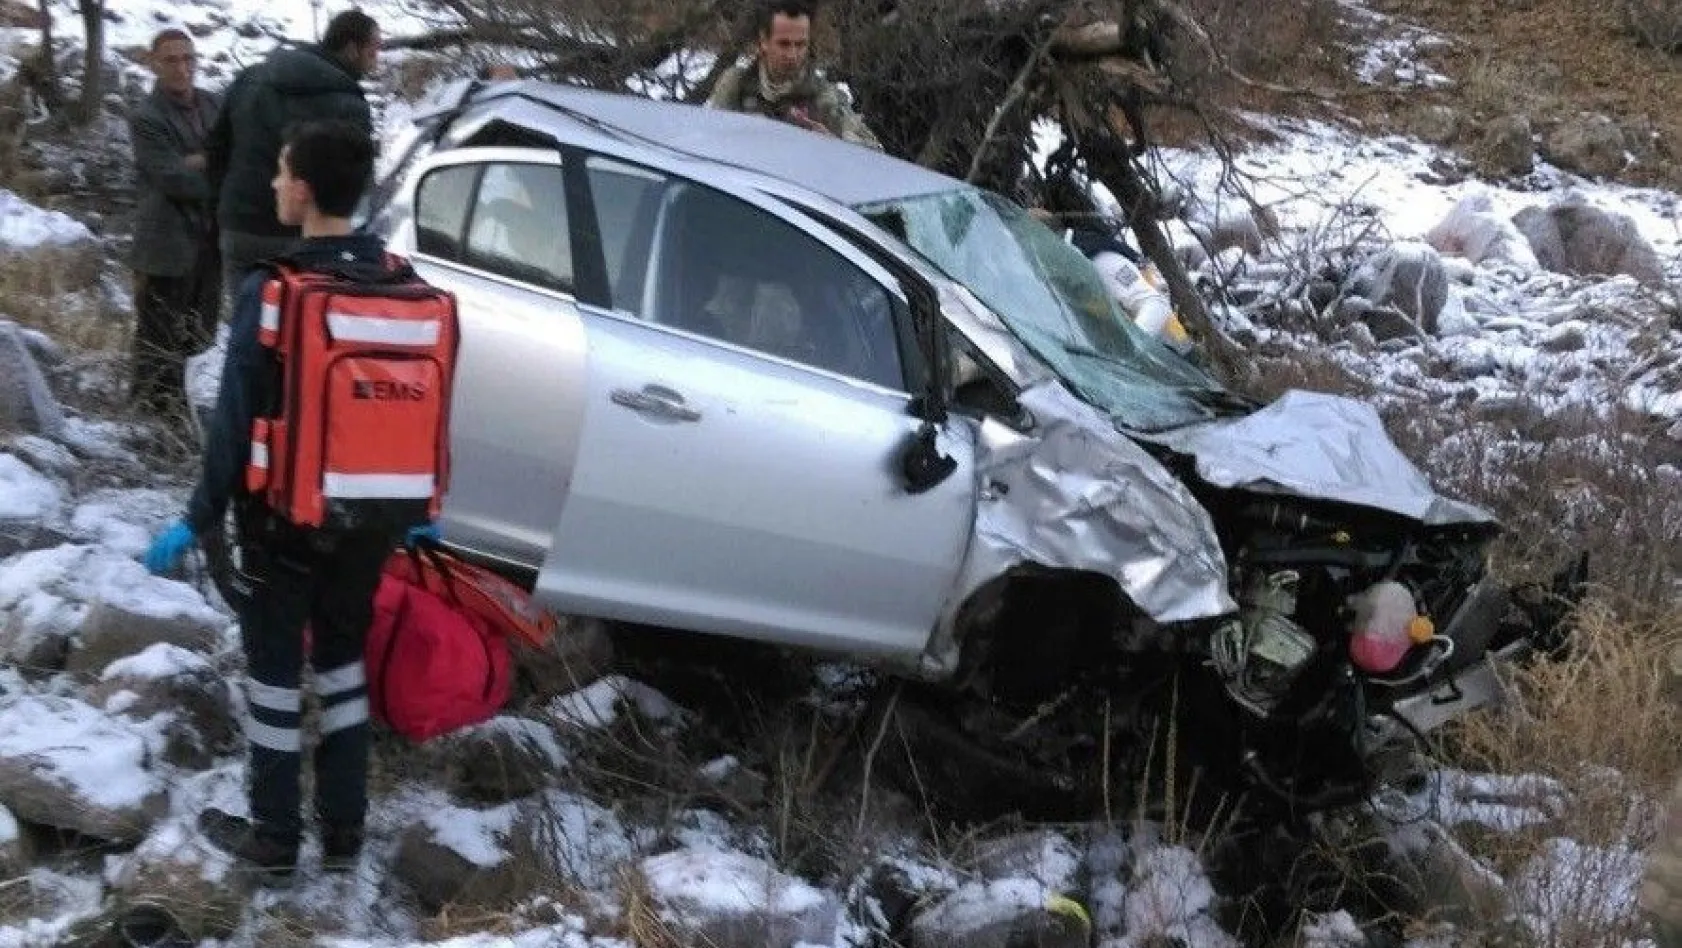 Bingöl'de otomobil şarampole yuvarlandı: 1 ölü